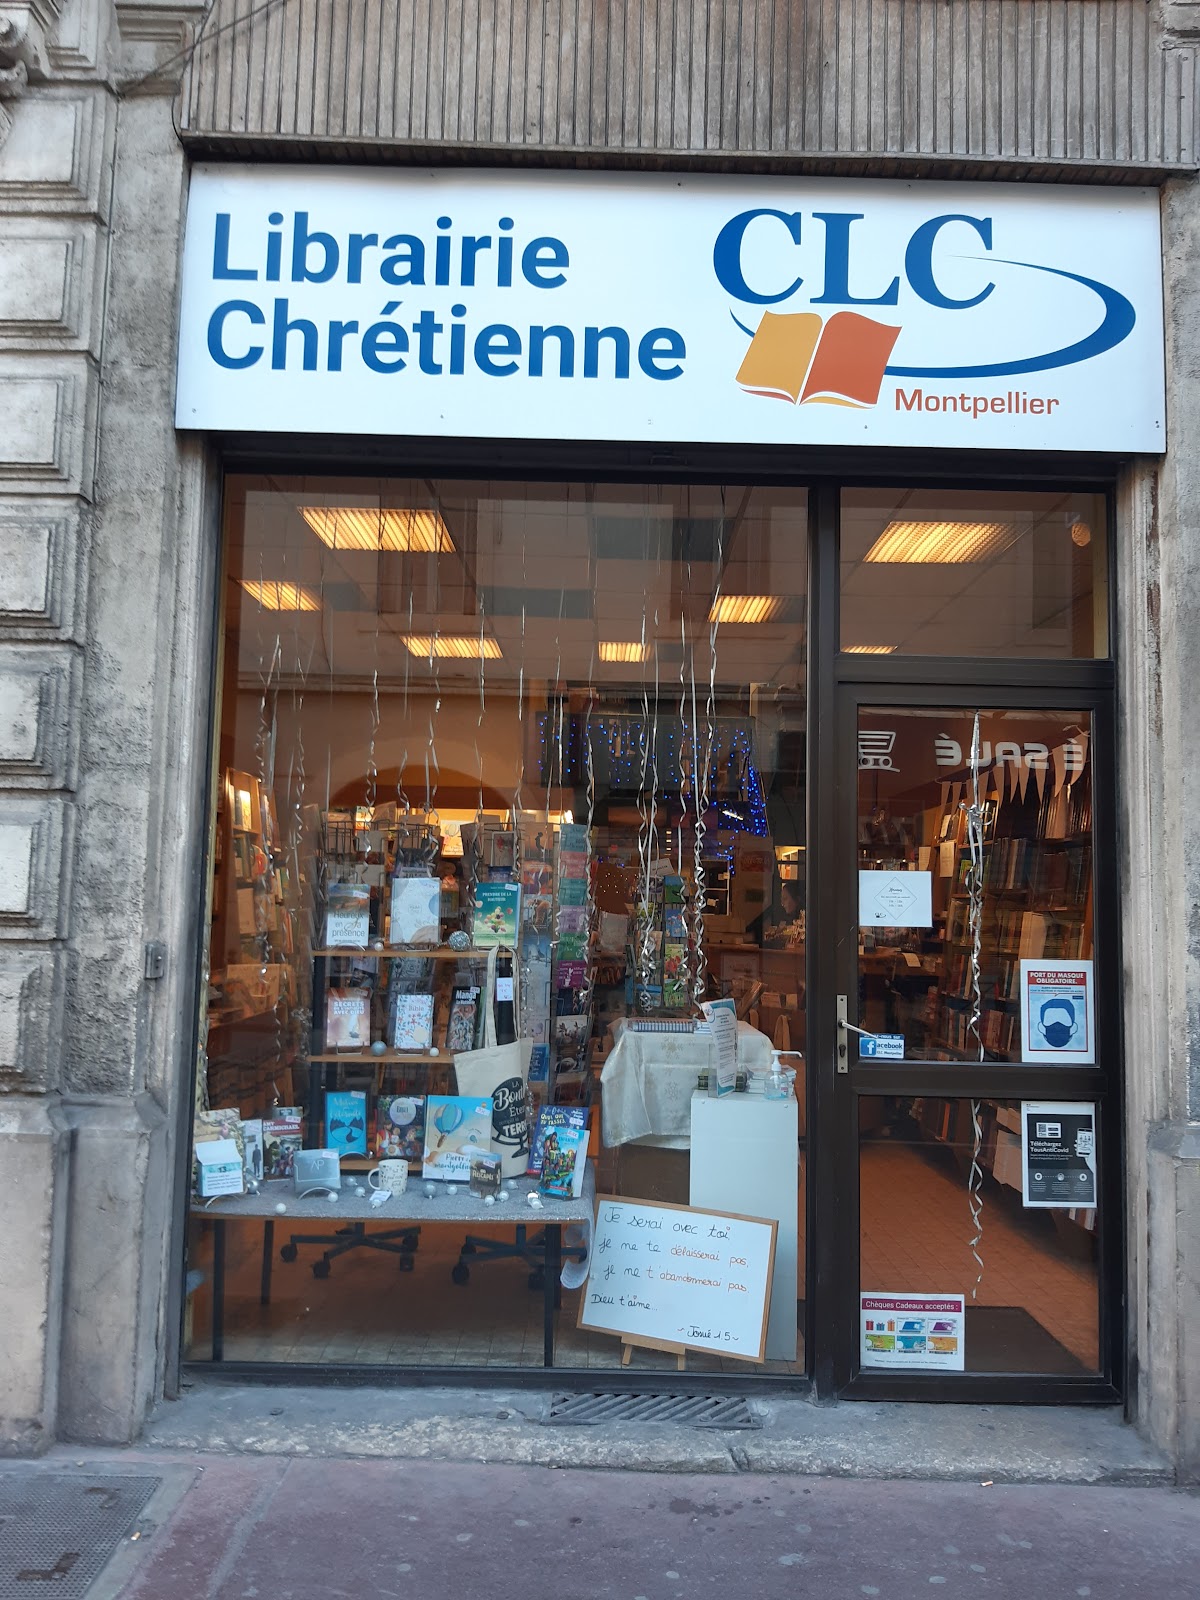 Librairie Chrétienne CLC Montpellier